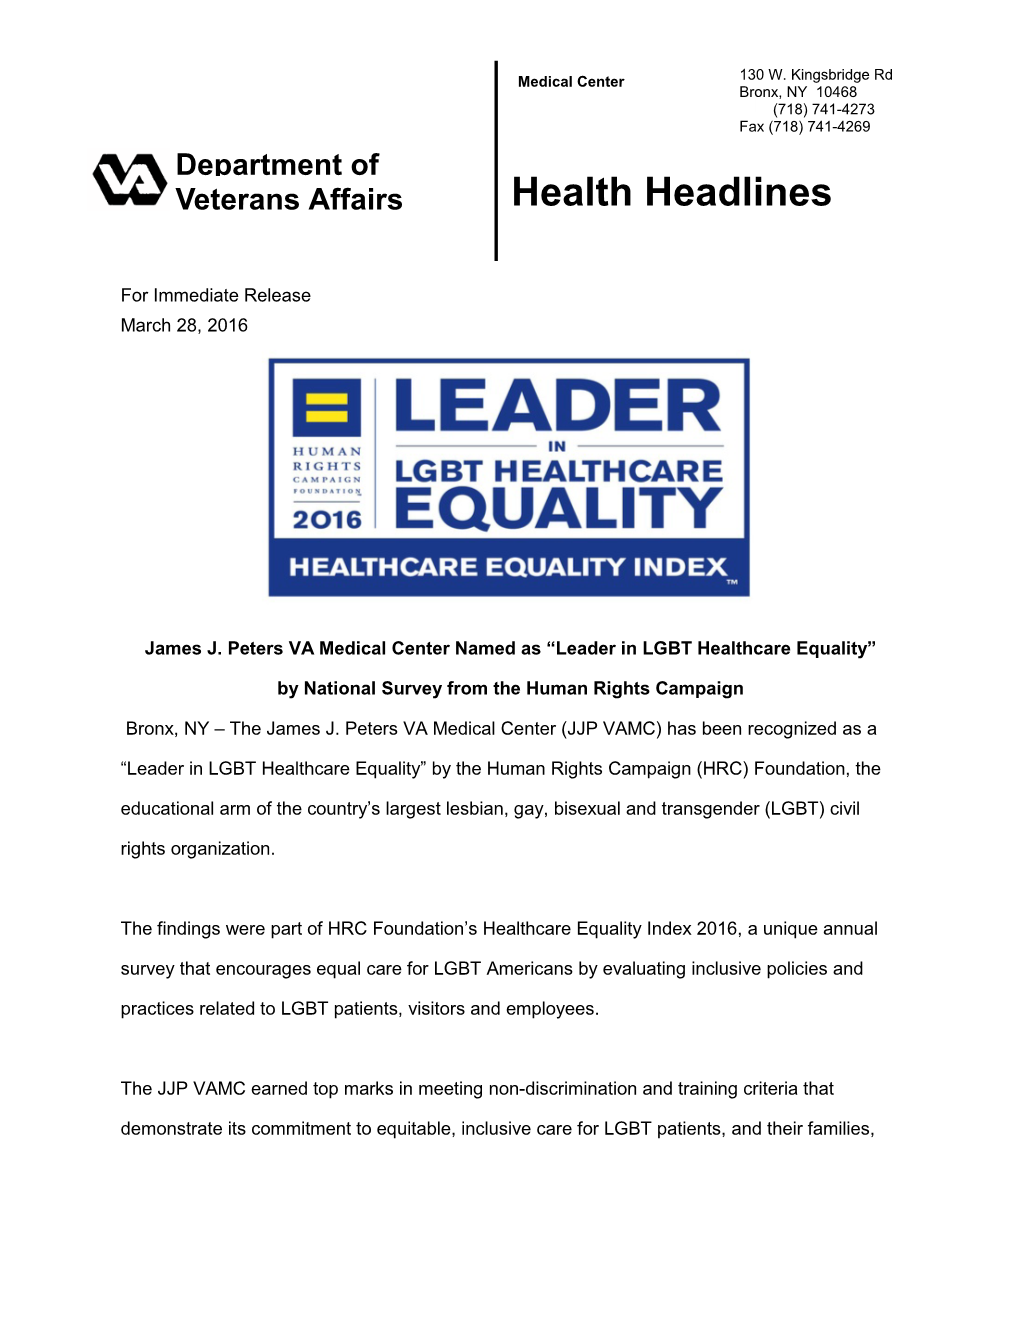 JJPVAMC Named Leader in LGBT